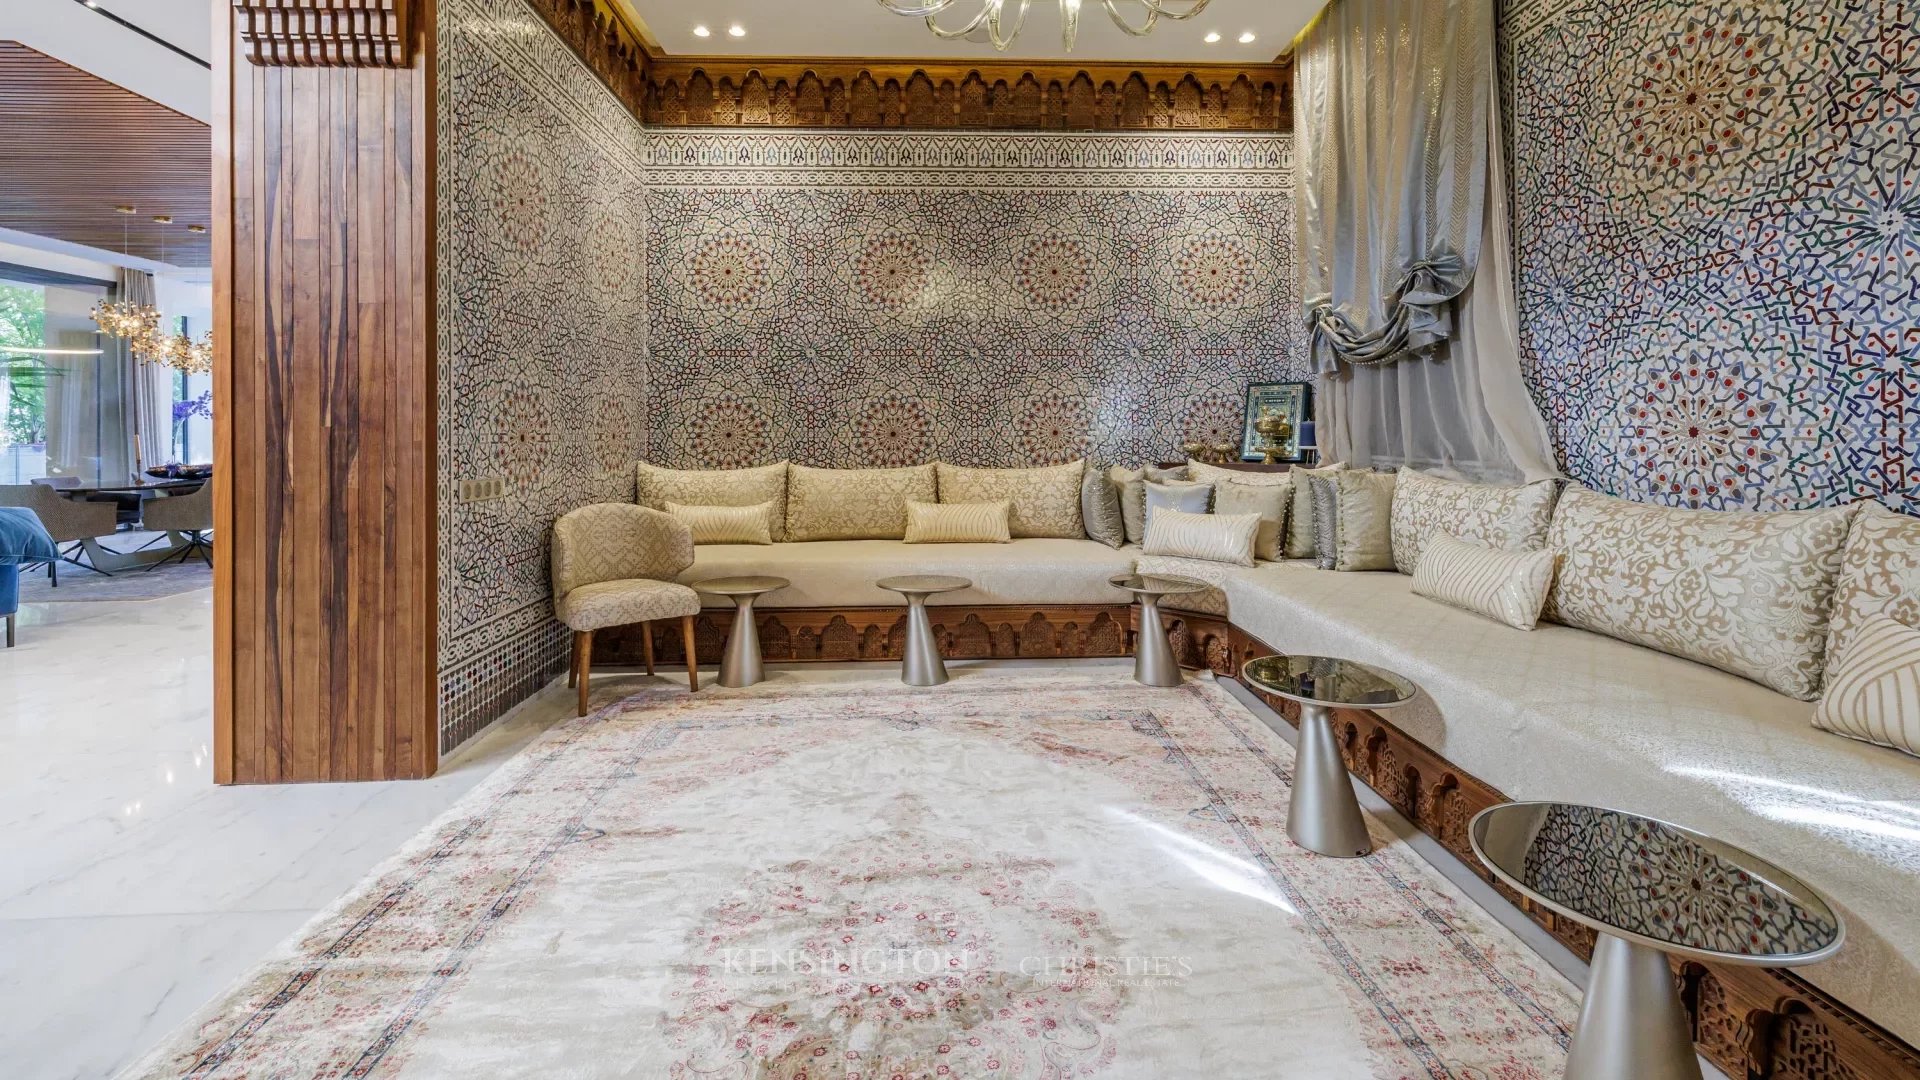 Villa Redas in Marrakech, Morocco